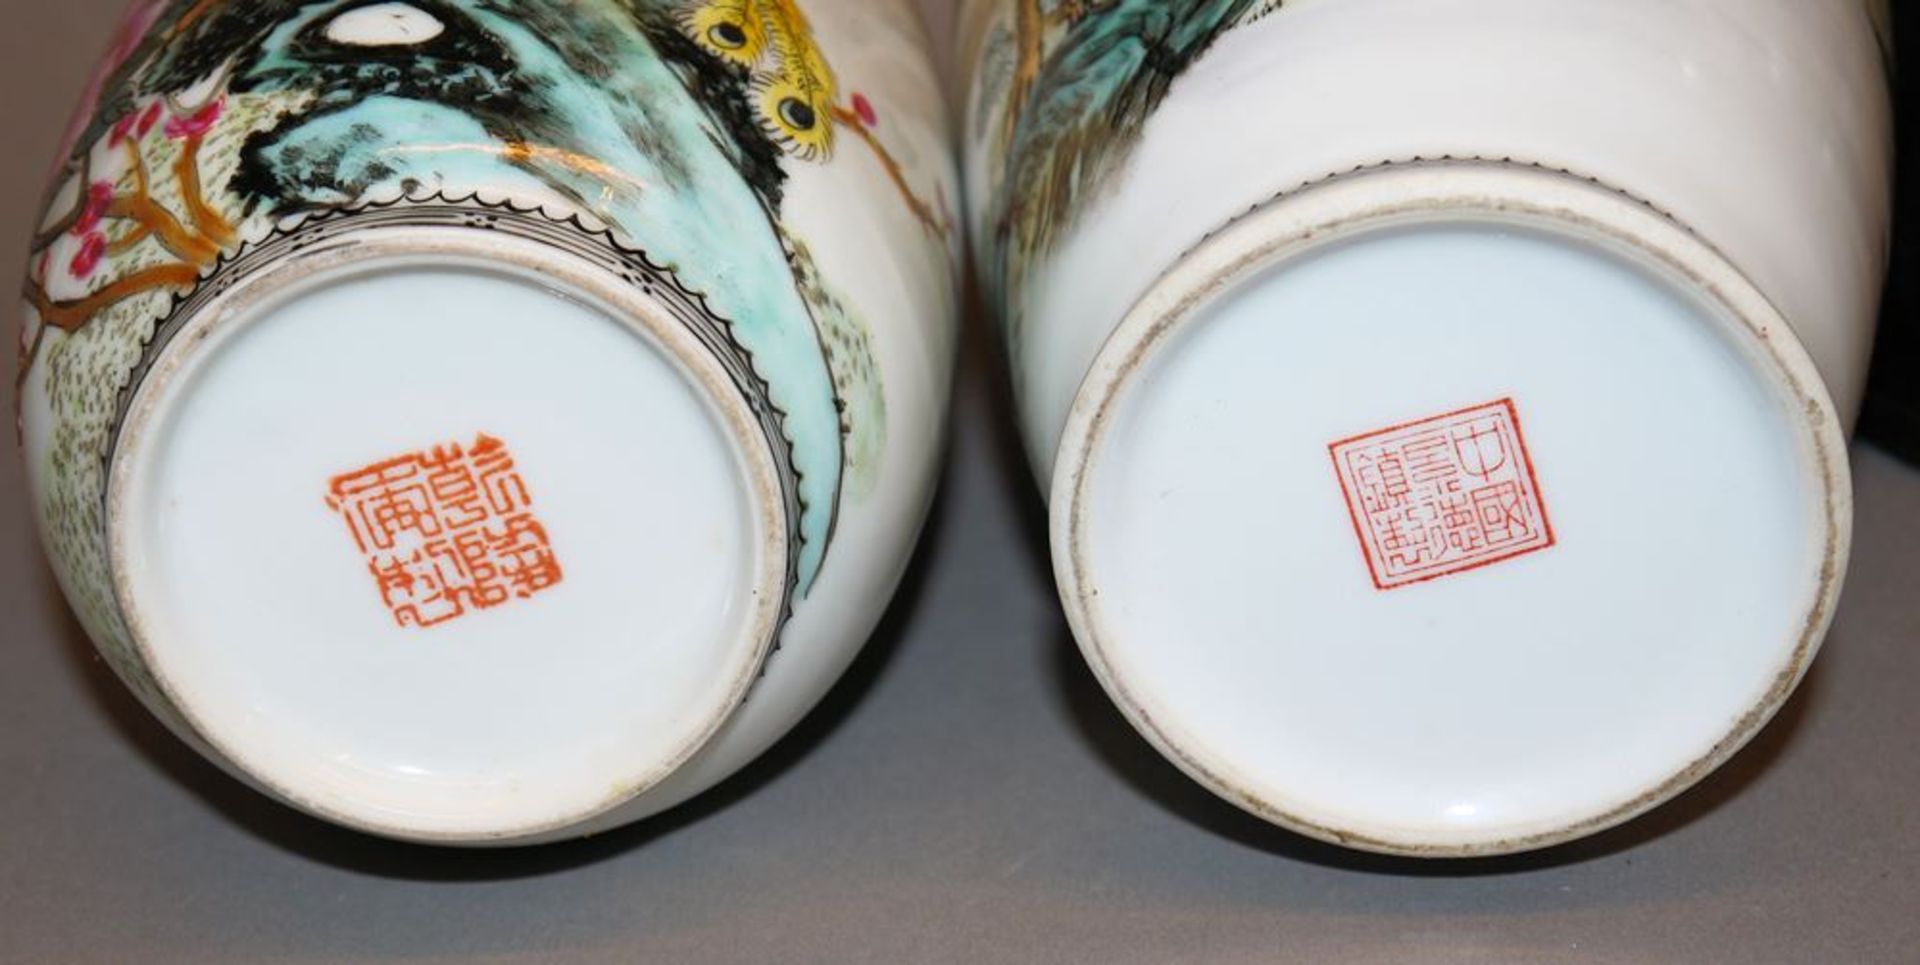 Zwei feine bemalte Porzellanvasen aus Jingdezhen, China 2. H. 20. Jh. - Image 3 of 3